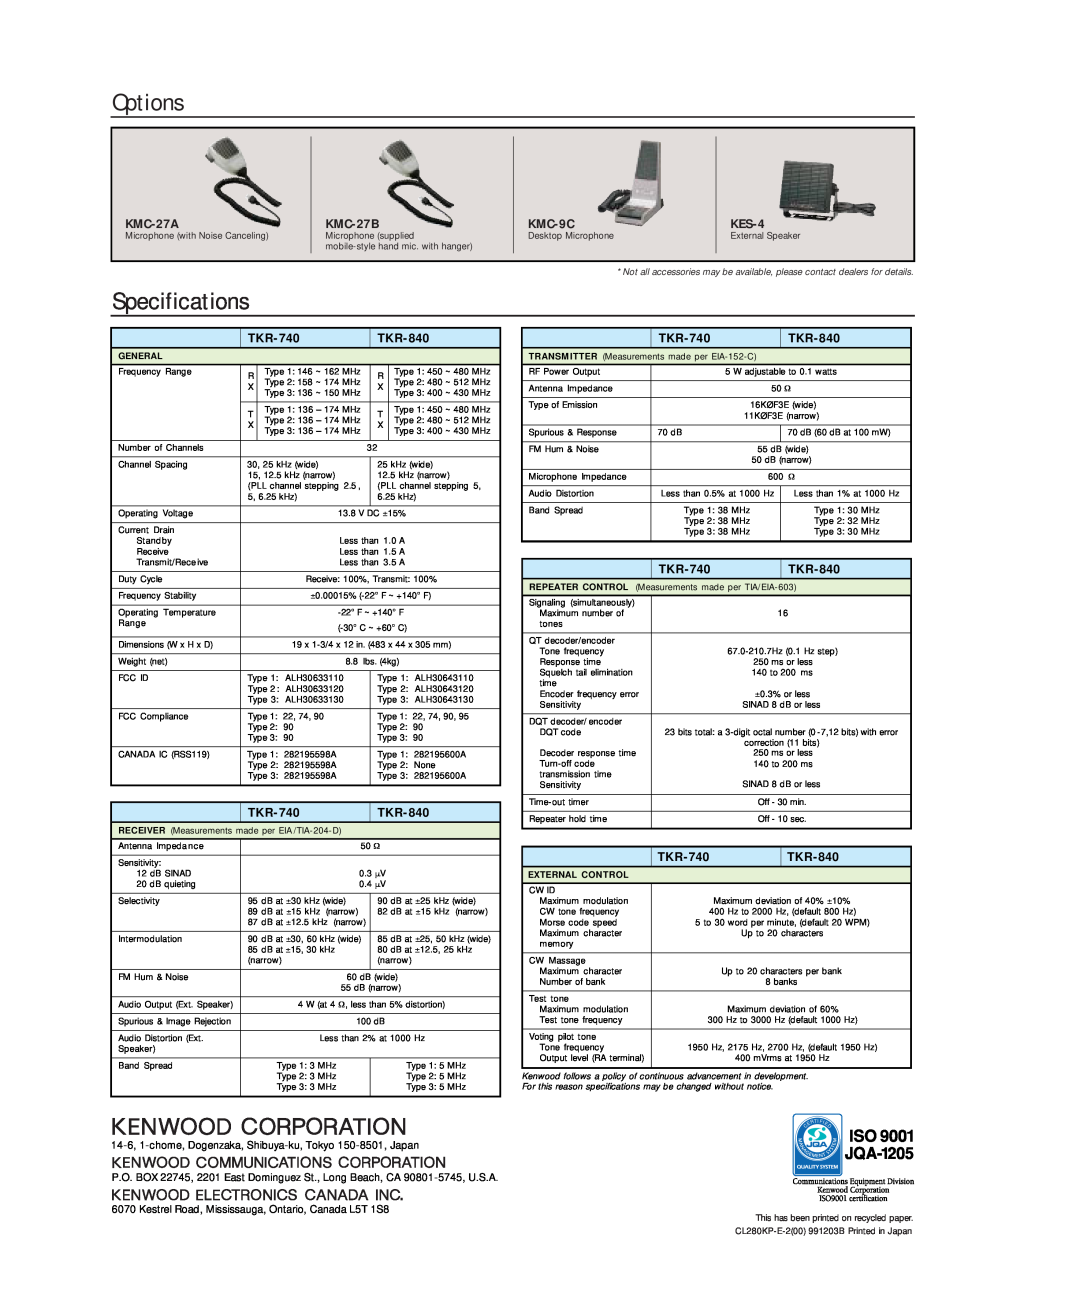 Kenwood TKR-740 manual Options, Specifications, KMC-27A, KMC-27B, KMC-9C, KES-4, TKR-840 